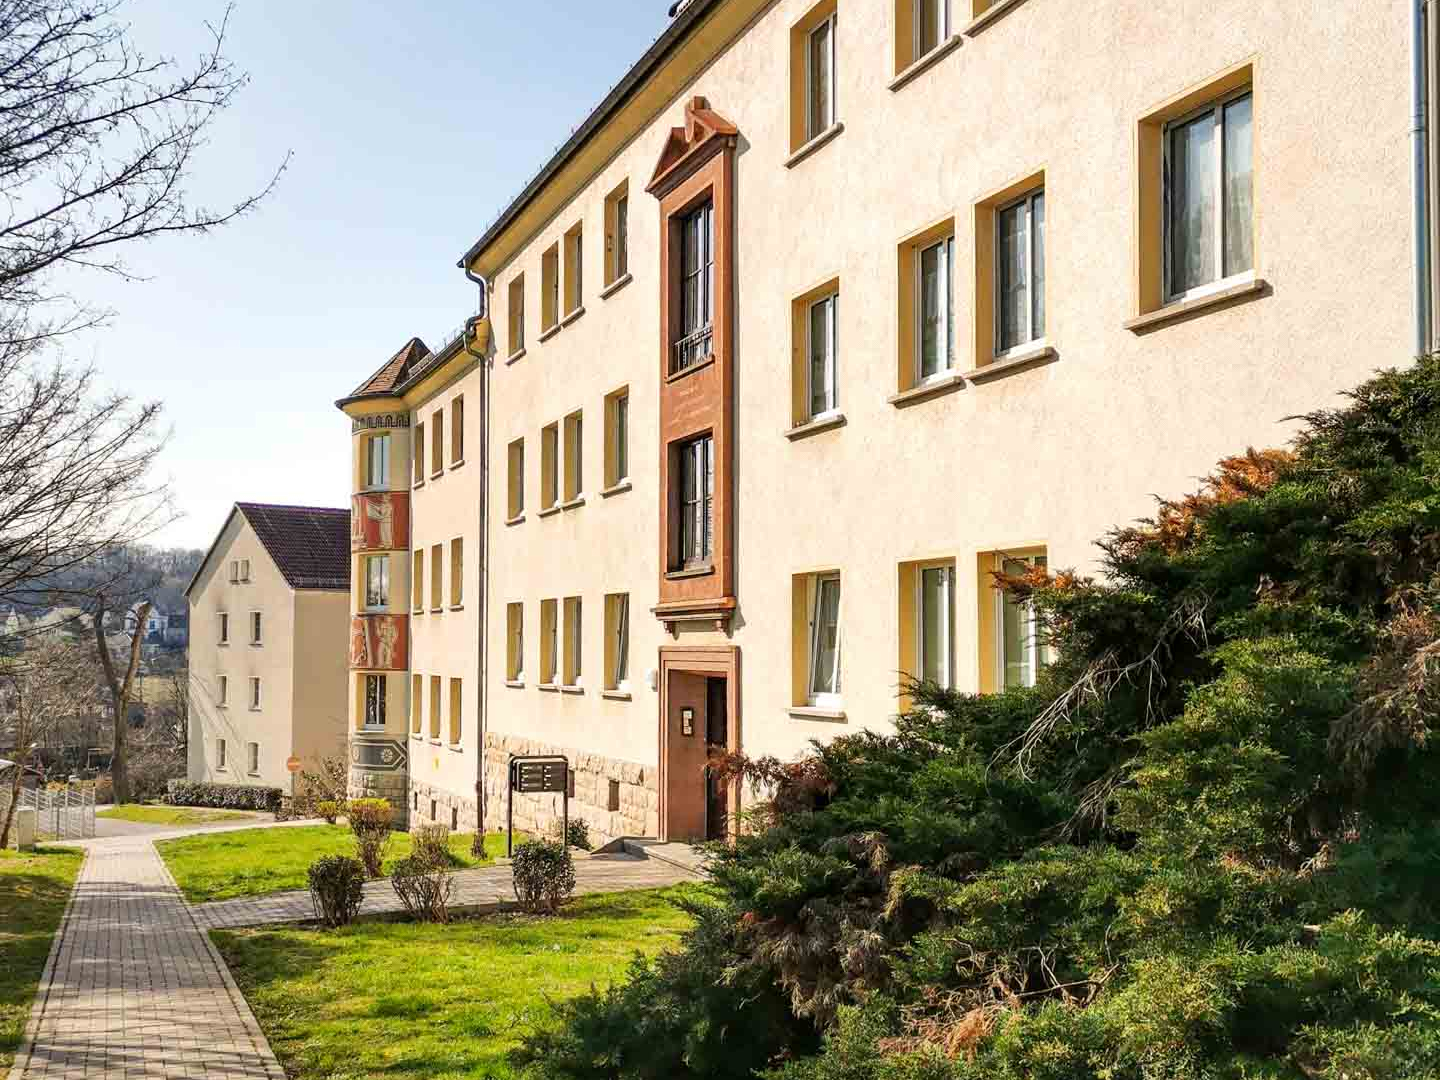 Auf sanierten Fußwegen, entlang gepflegter Vorgärten kommt jeder gern nach Hause in die Altenburgerstraße in Gera.